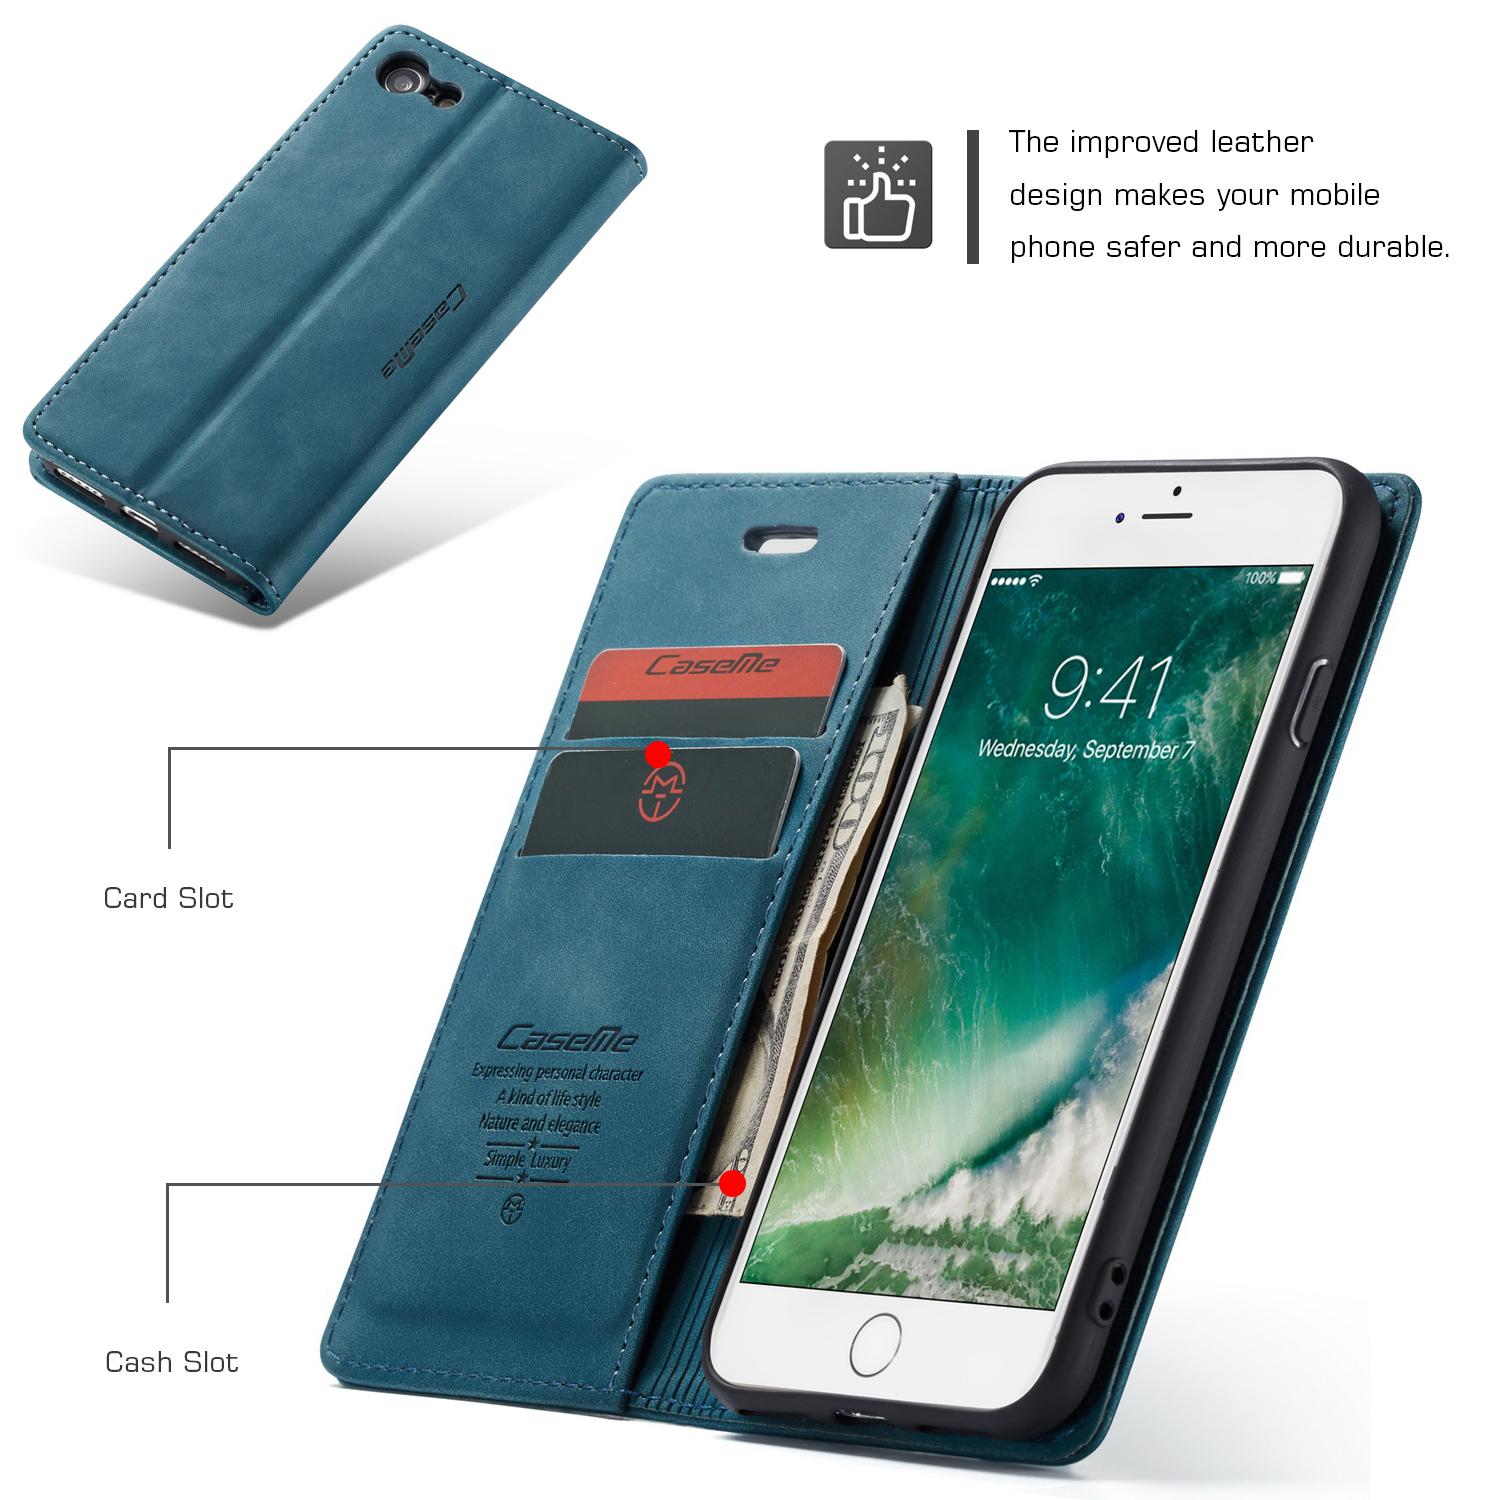 Slim Portemonnaie-Hülle iPhone 8 blau